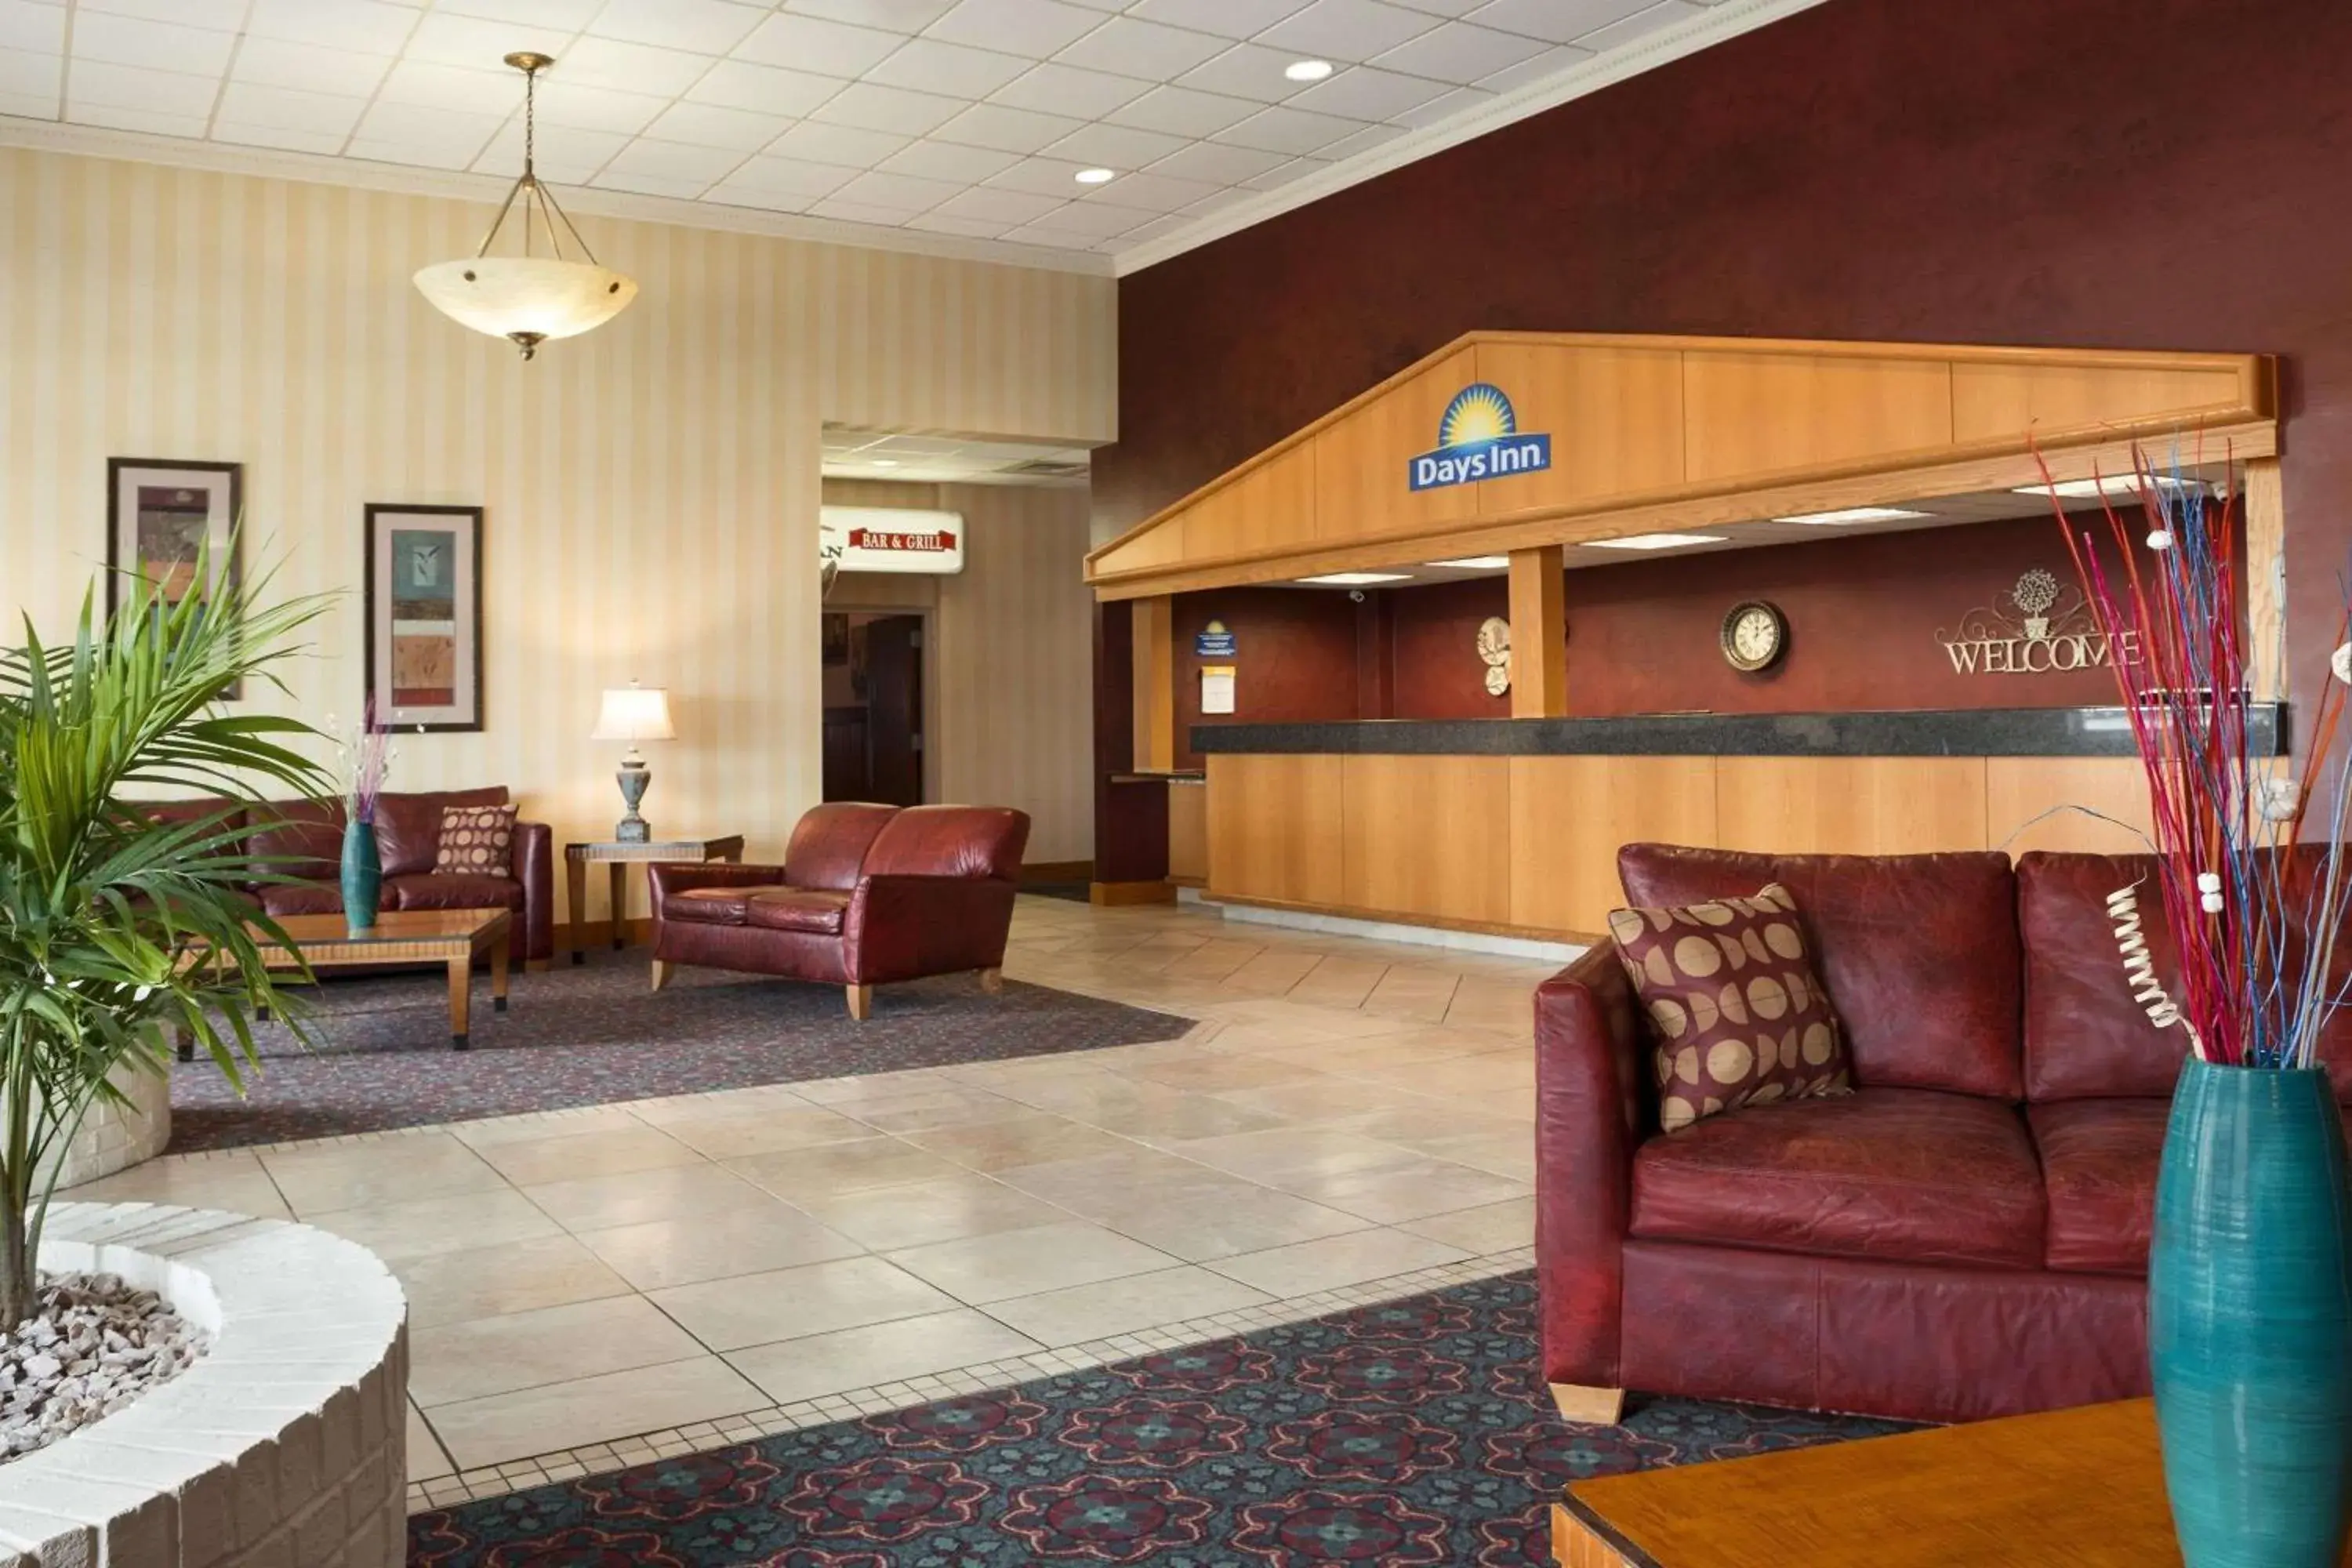 Lobby or reception, Lobby/Reception in Days Inn by Wyndham Rock Falls